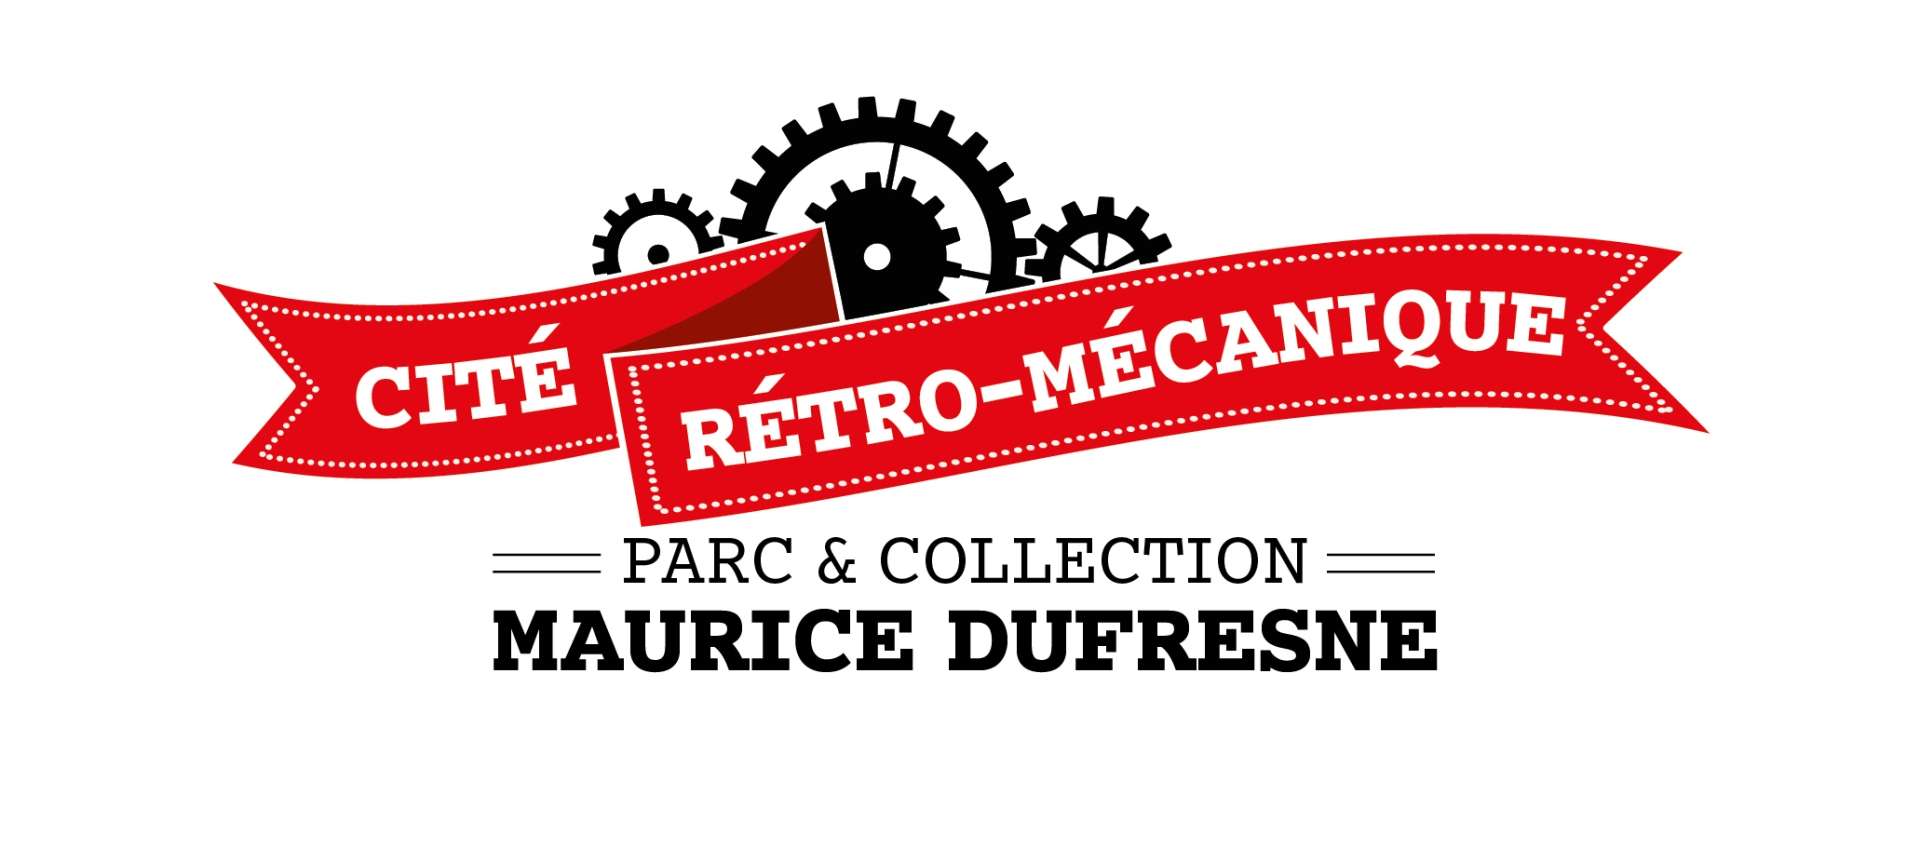 Cité Rétro-mécanique - Parc & Collection Maurice Dufresne